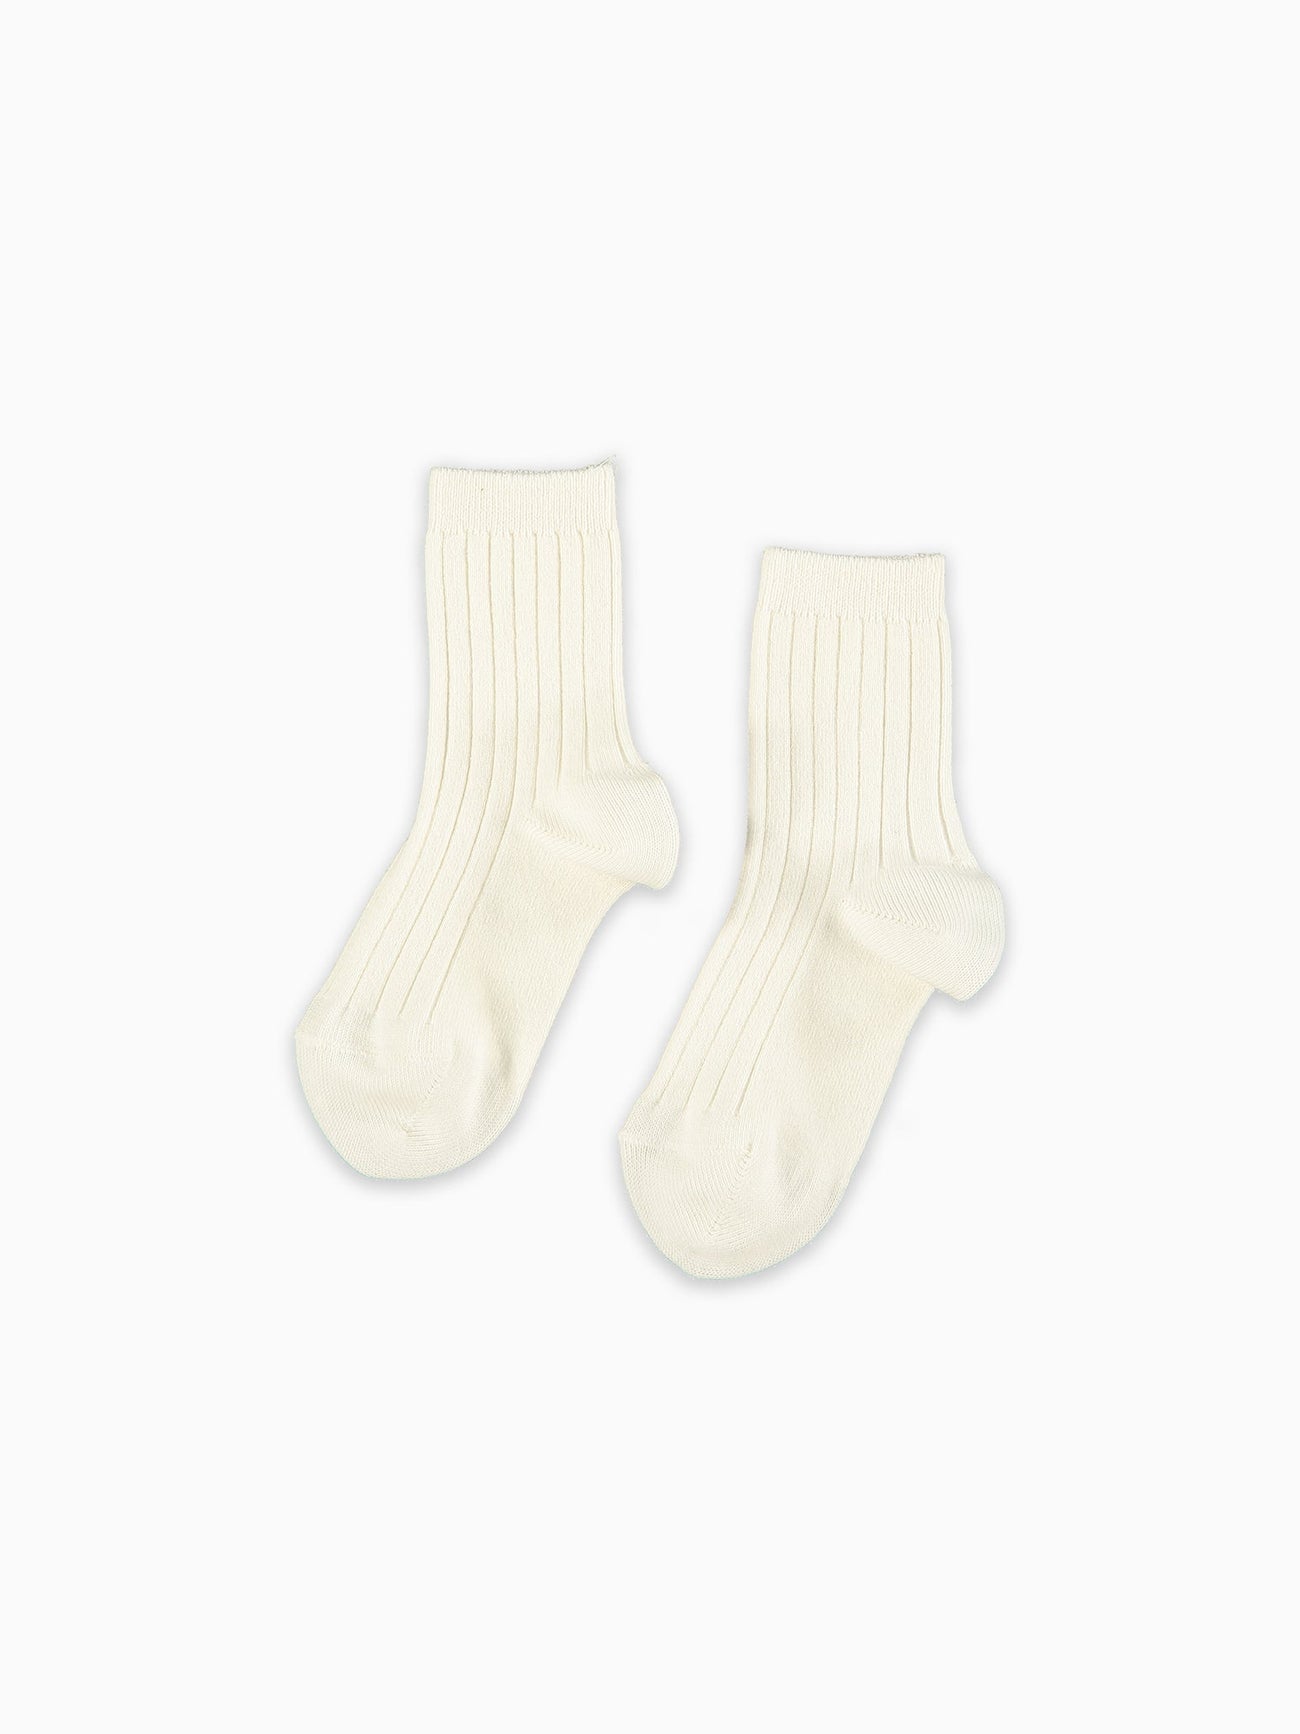 Off White Ribbed Short Kids Socks Set